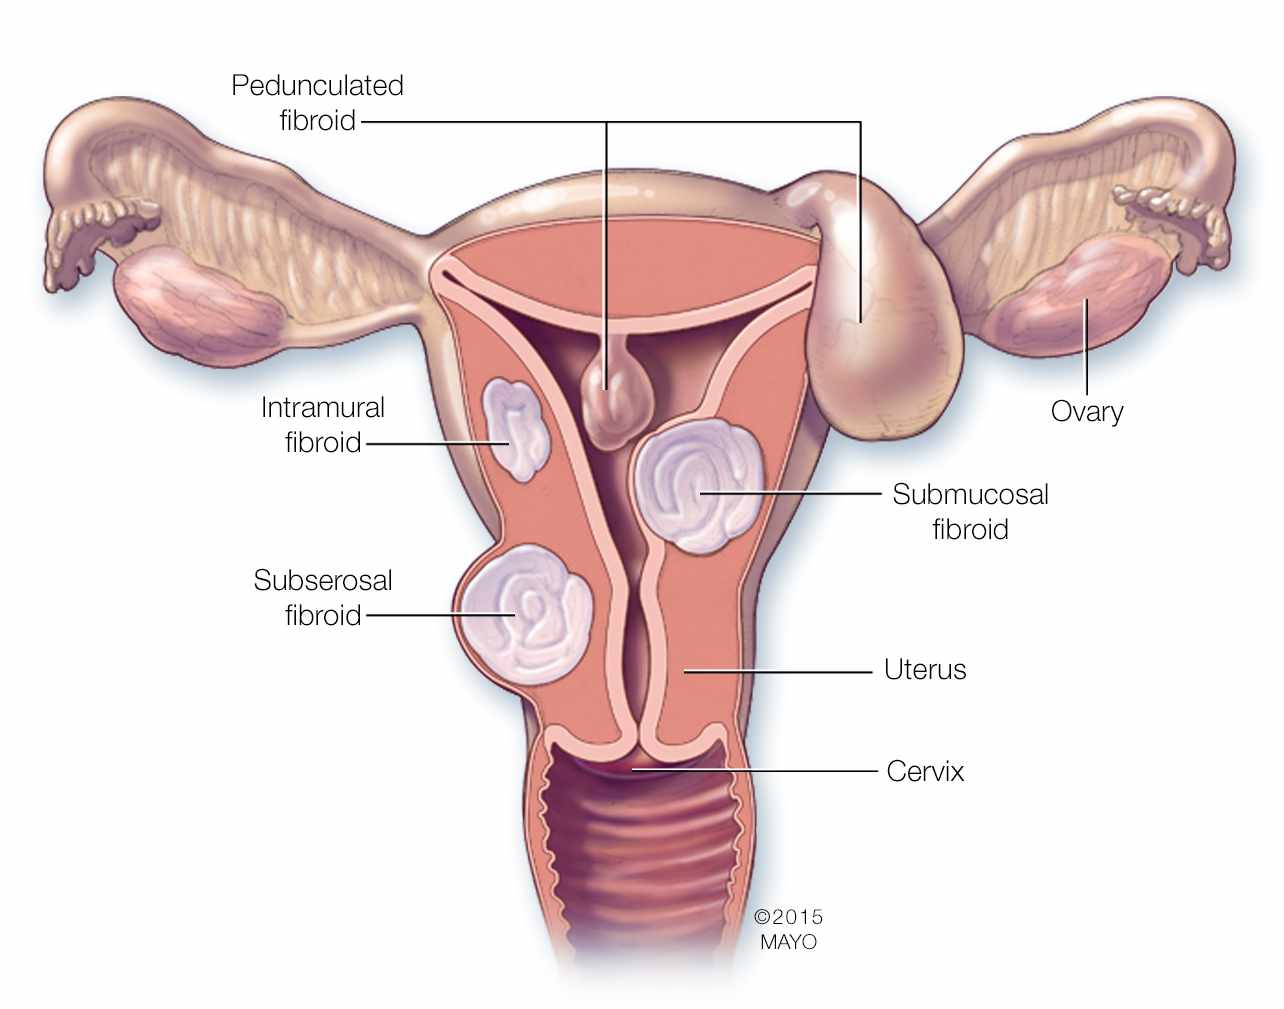 Tackling Fibroid, Endometriosis Through Laparoscopy